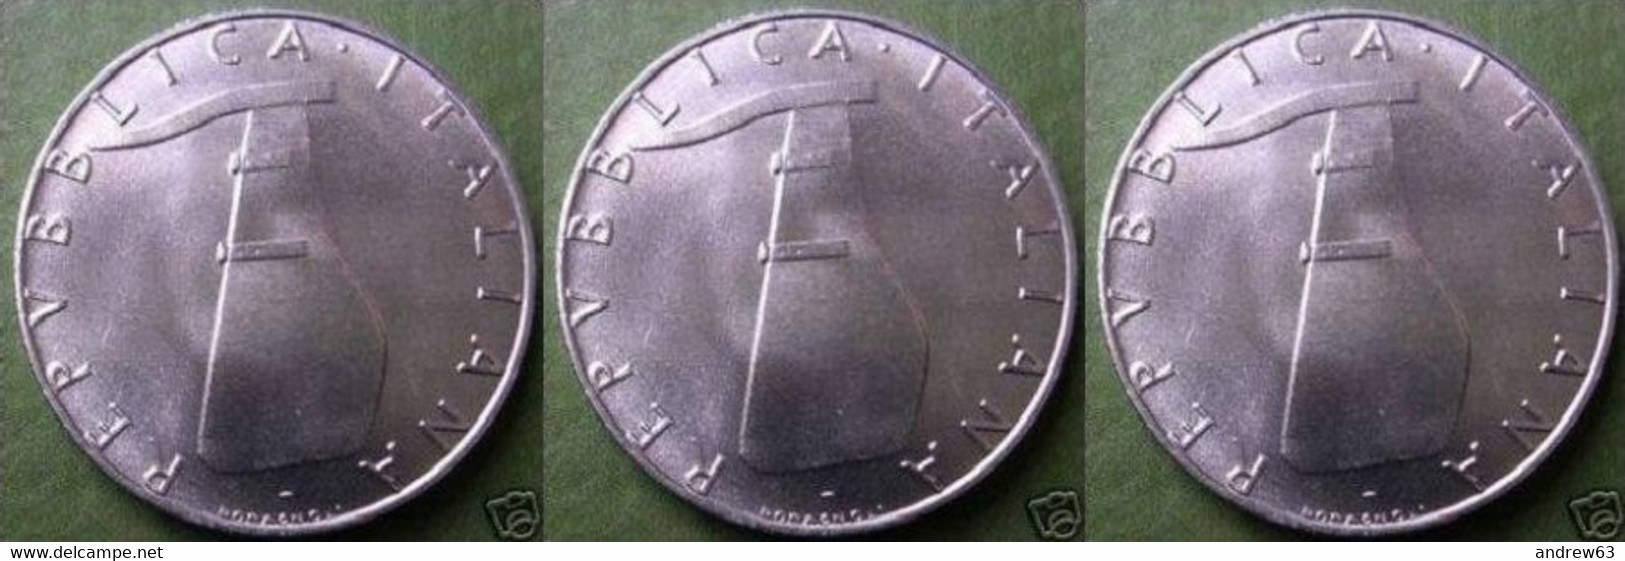 ITALIA - Lire 5 1988 - FDC/Unc Da Rotolino/from Roll 3 Monete/3 Coins - 5 Lire